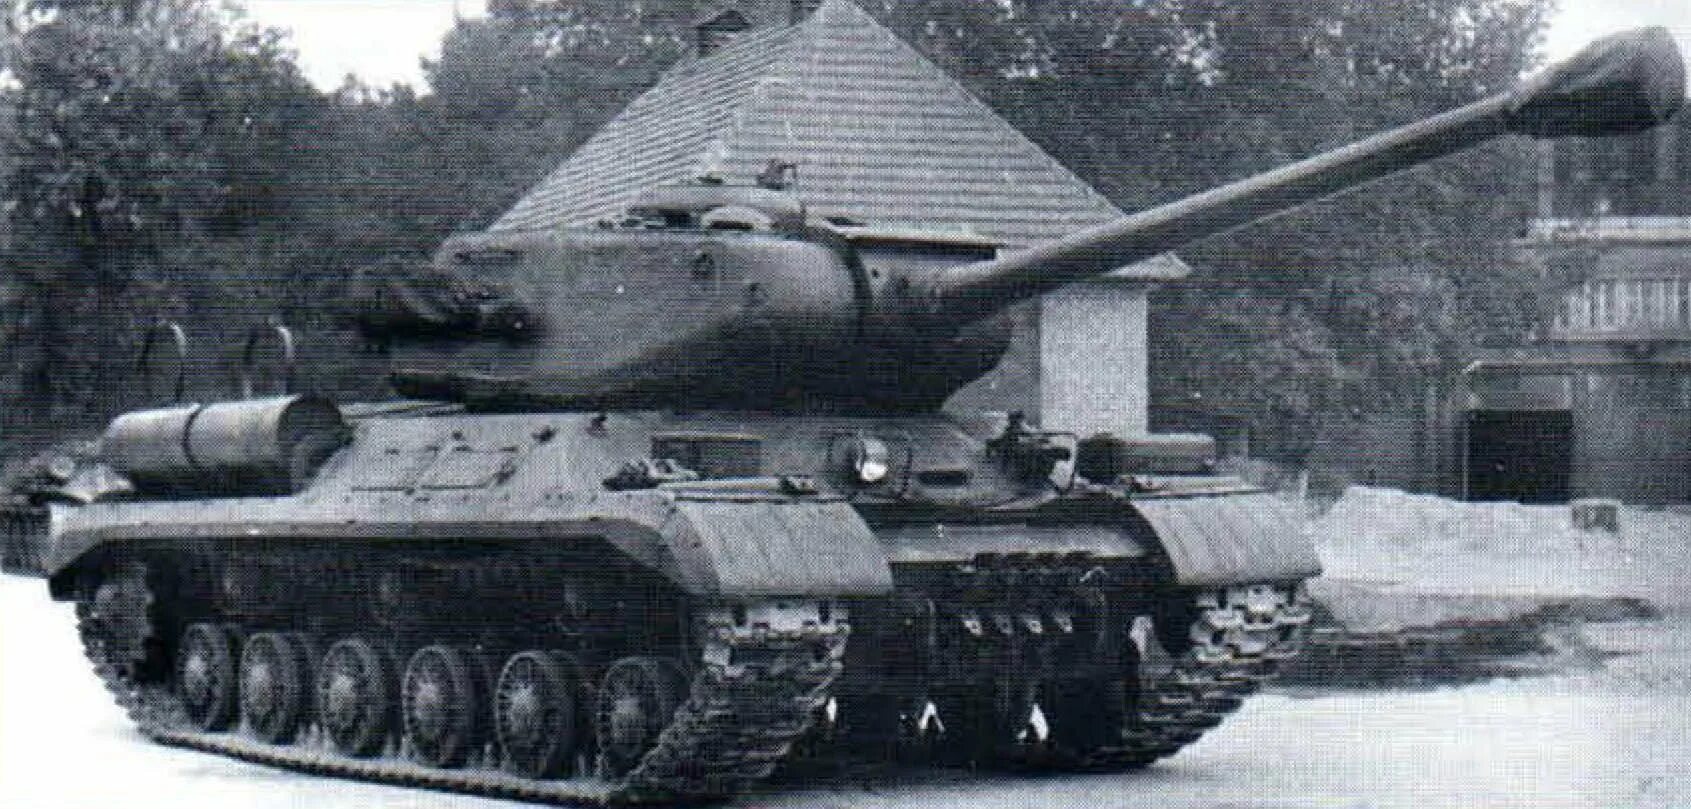 ИС-2м тяжёлый танк. Танк ИС-2м. Танк ИС-2. Советский тяжелый танк ИС-2 (Иосиф Сталин).